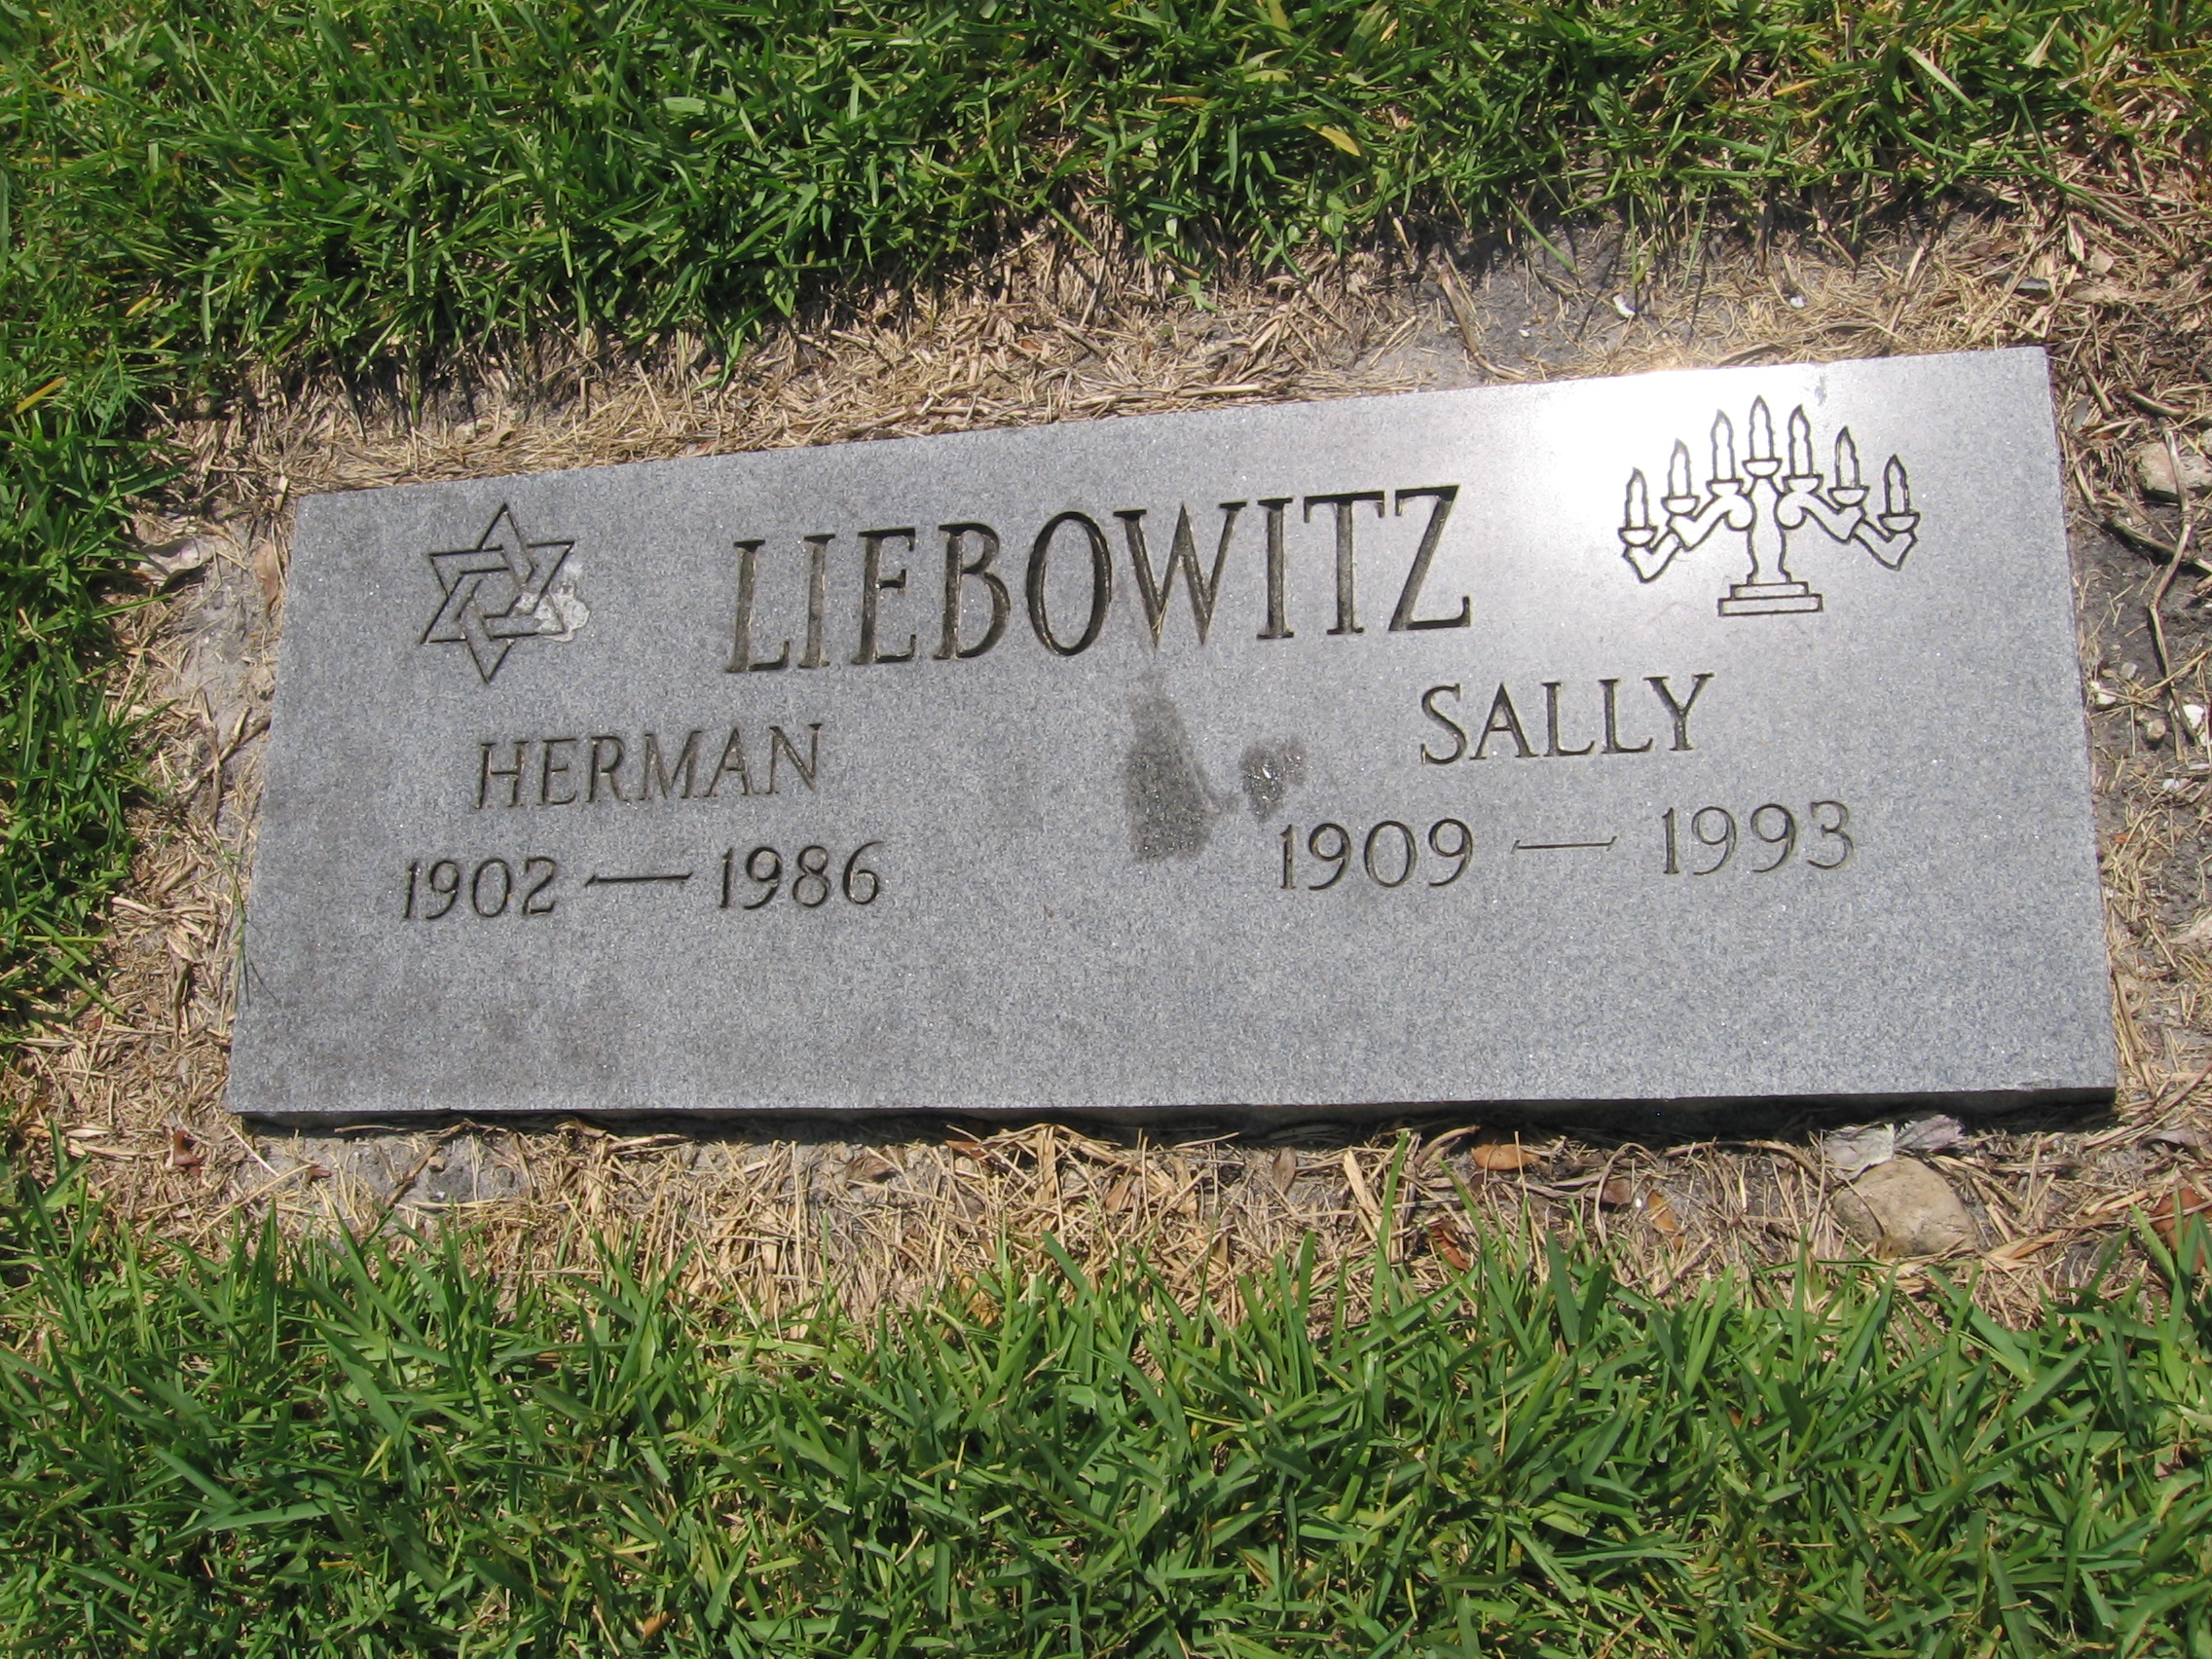 Herman Liebowitz